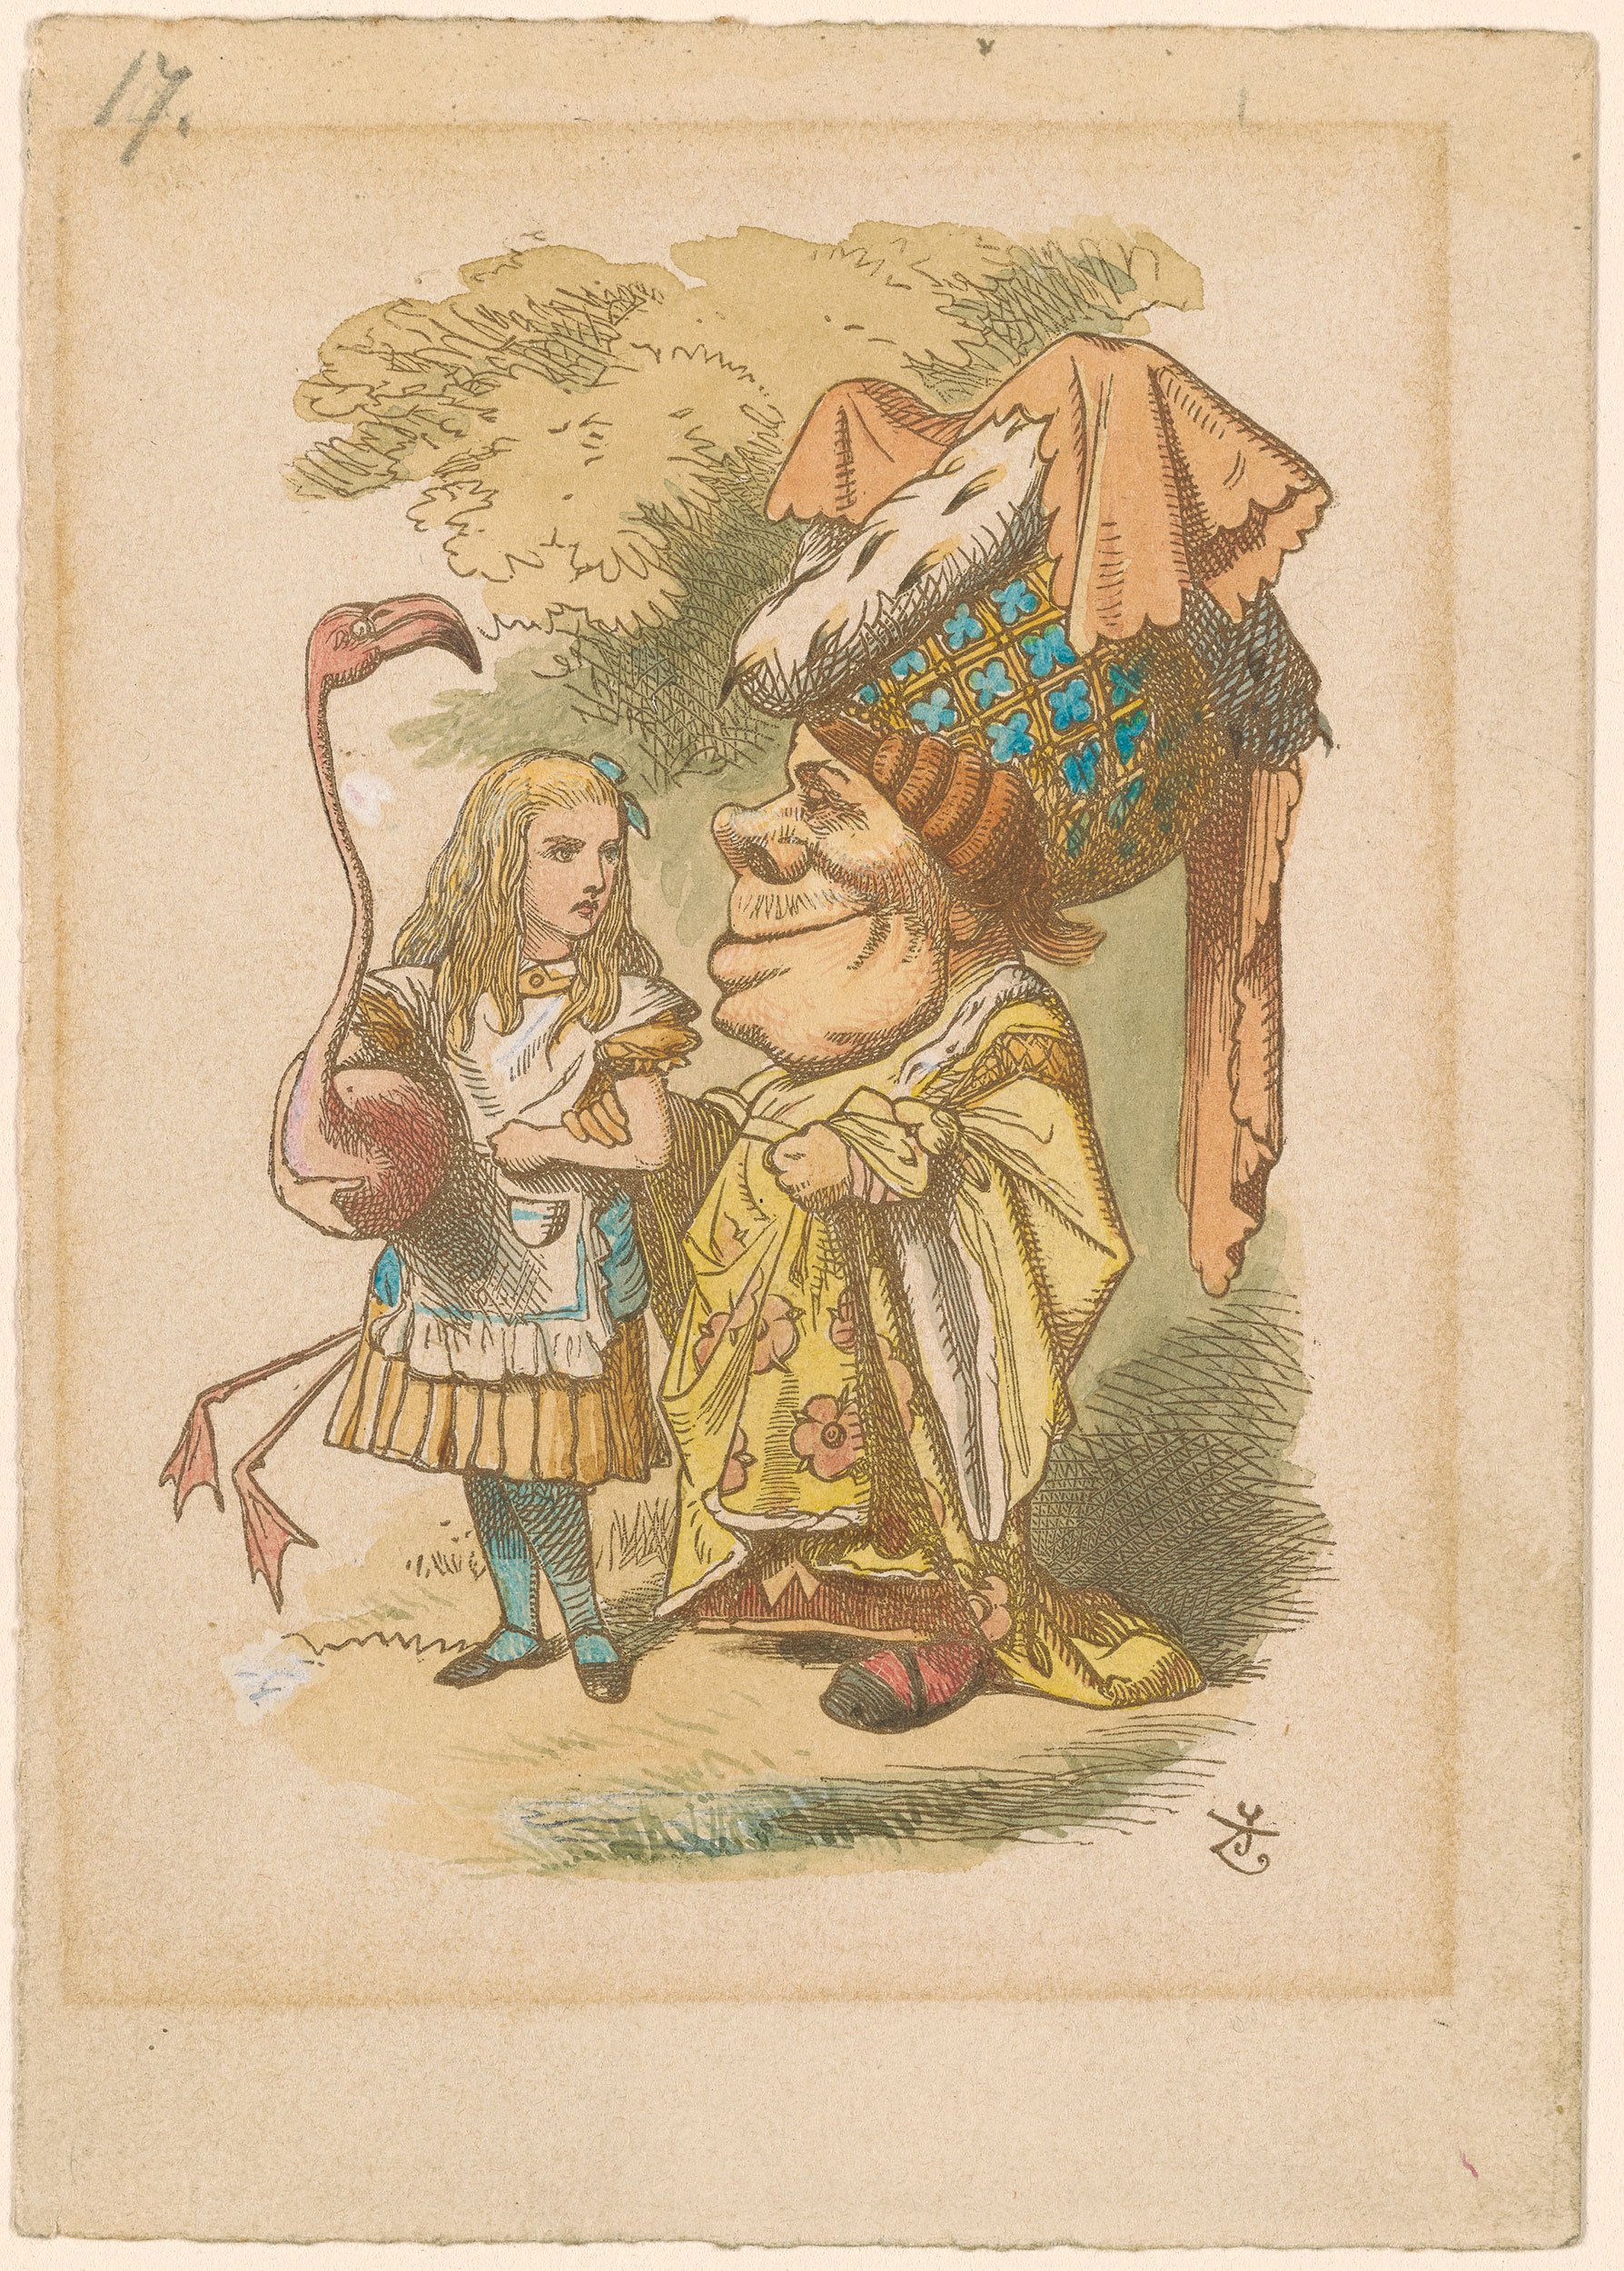 Alice in Wonderland full of symbolism, author says